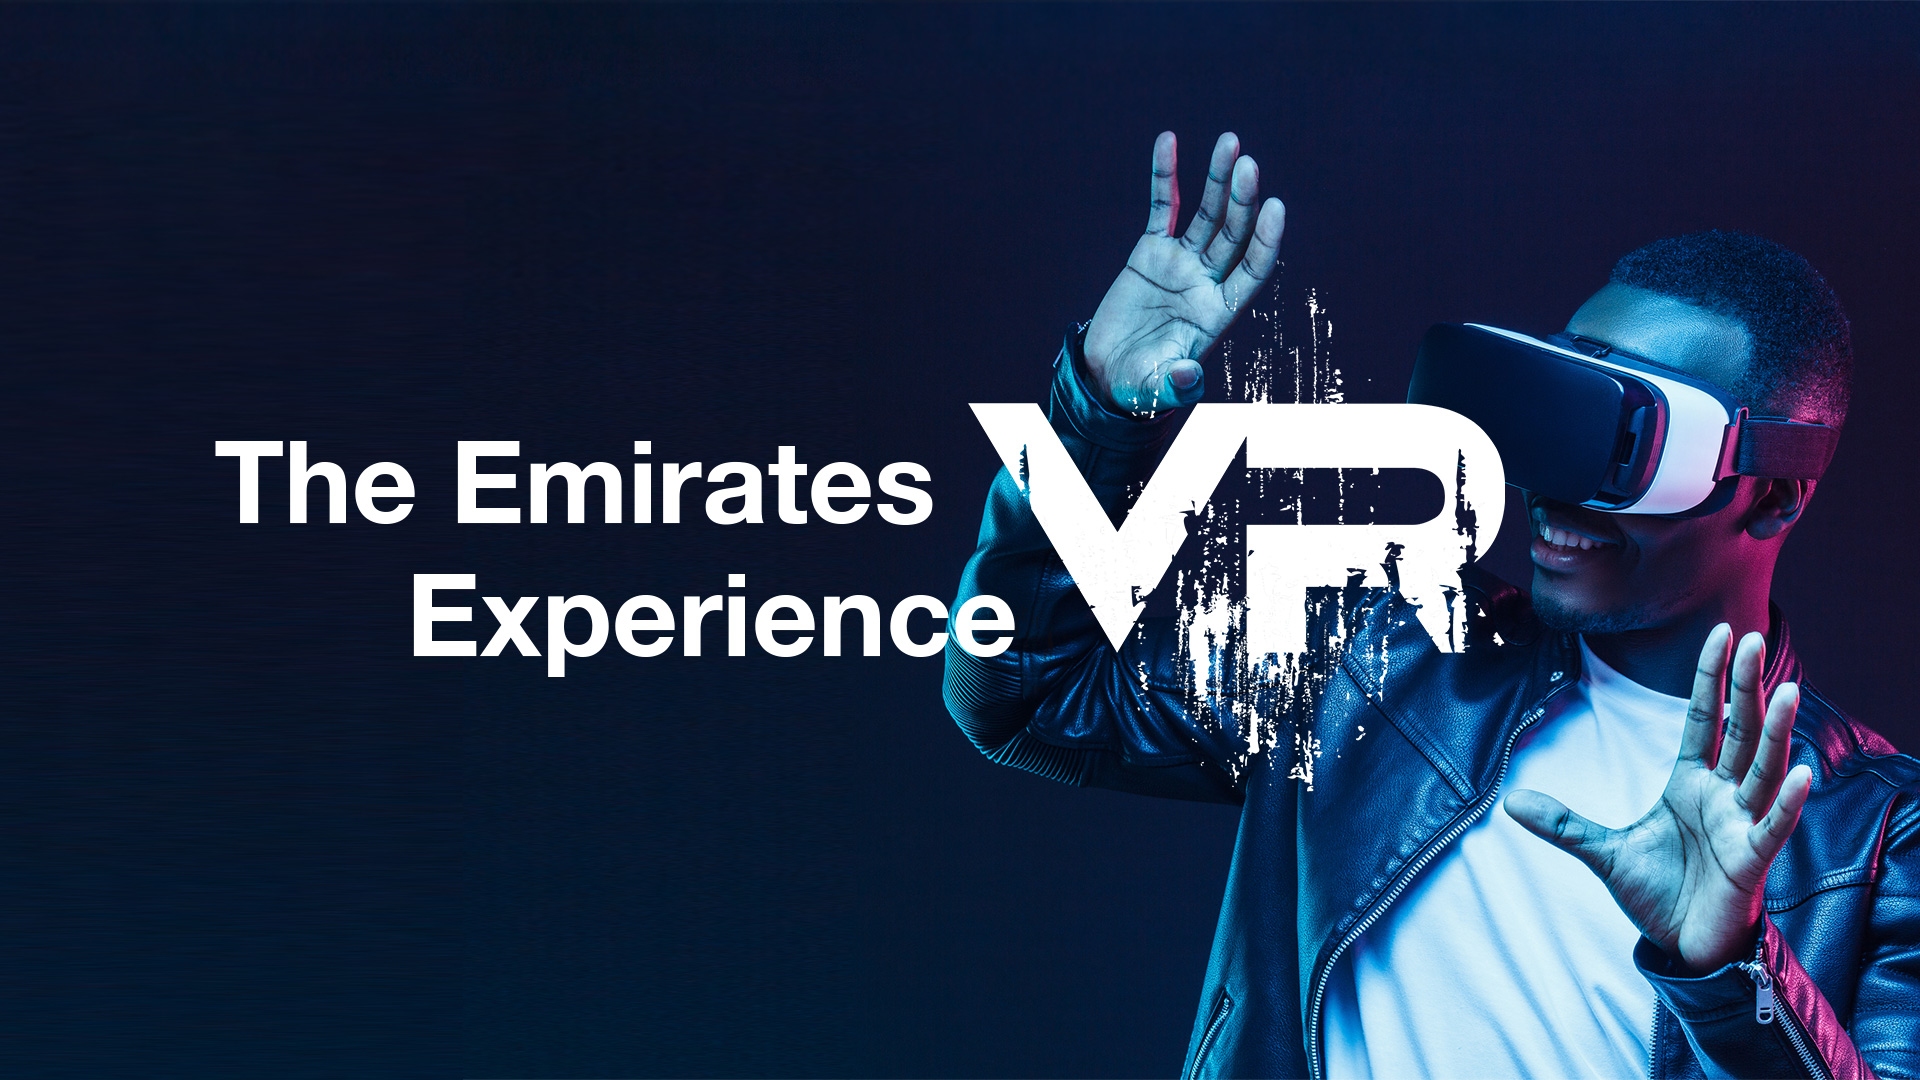 图片展示一位戴着虚拟现实头盔的人正体验VR，背景为深蓝色调，旁边有“阿联酋VR体验”字样。